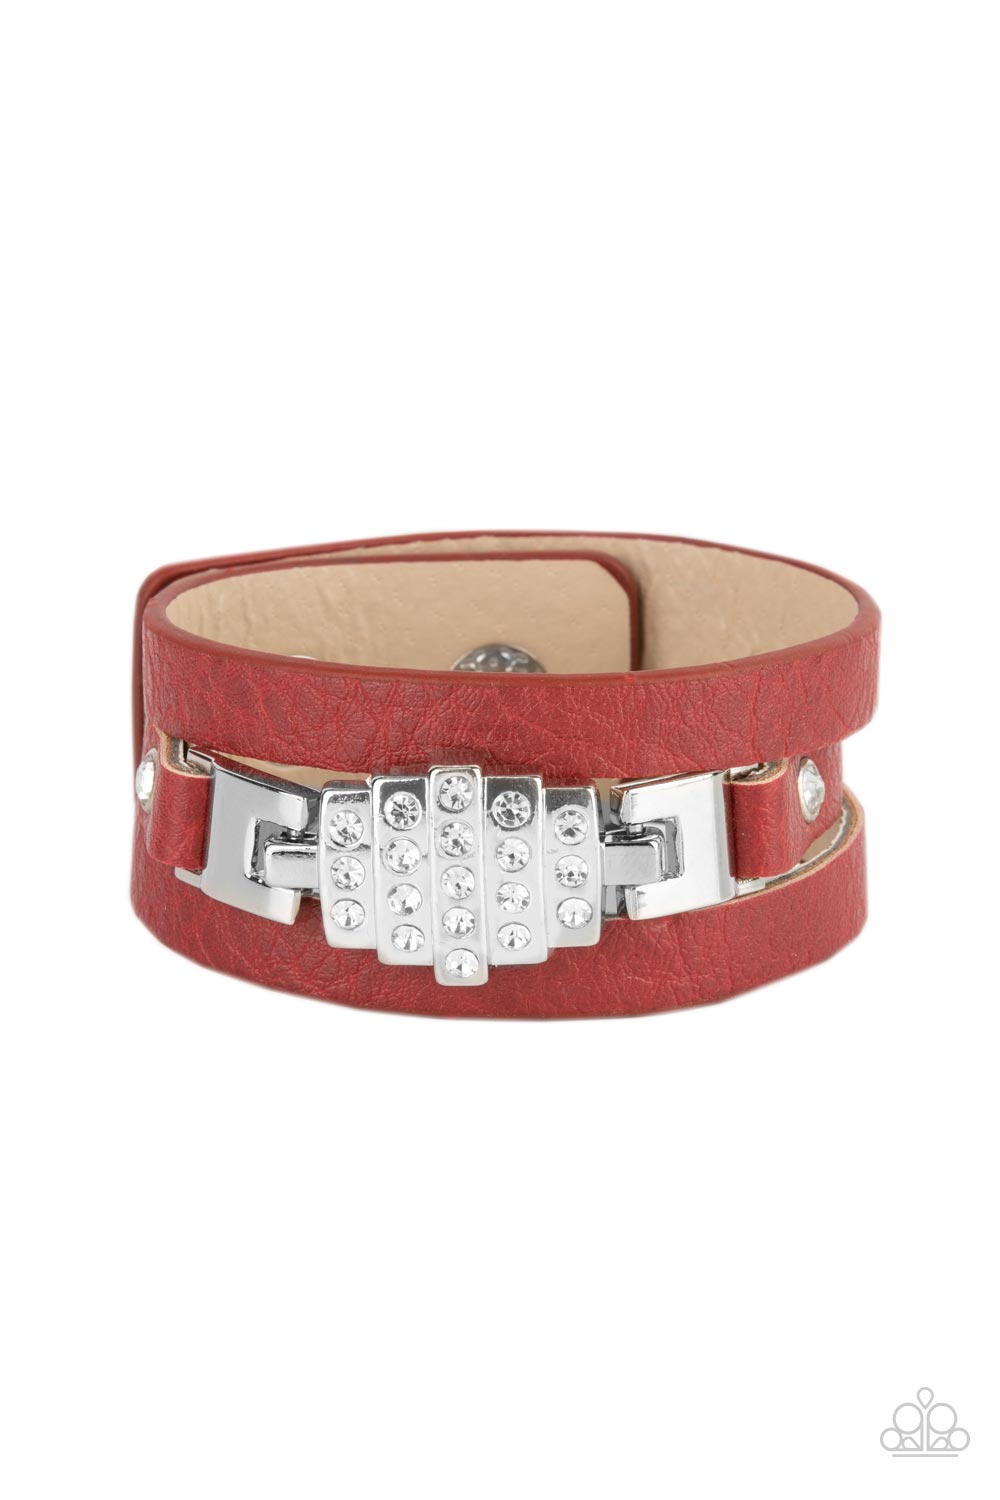 Ultra Urban - Red Bracelet - Paparazzi - Dare2bdazzlin N Jewelry